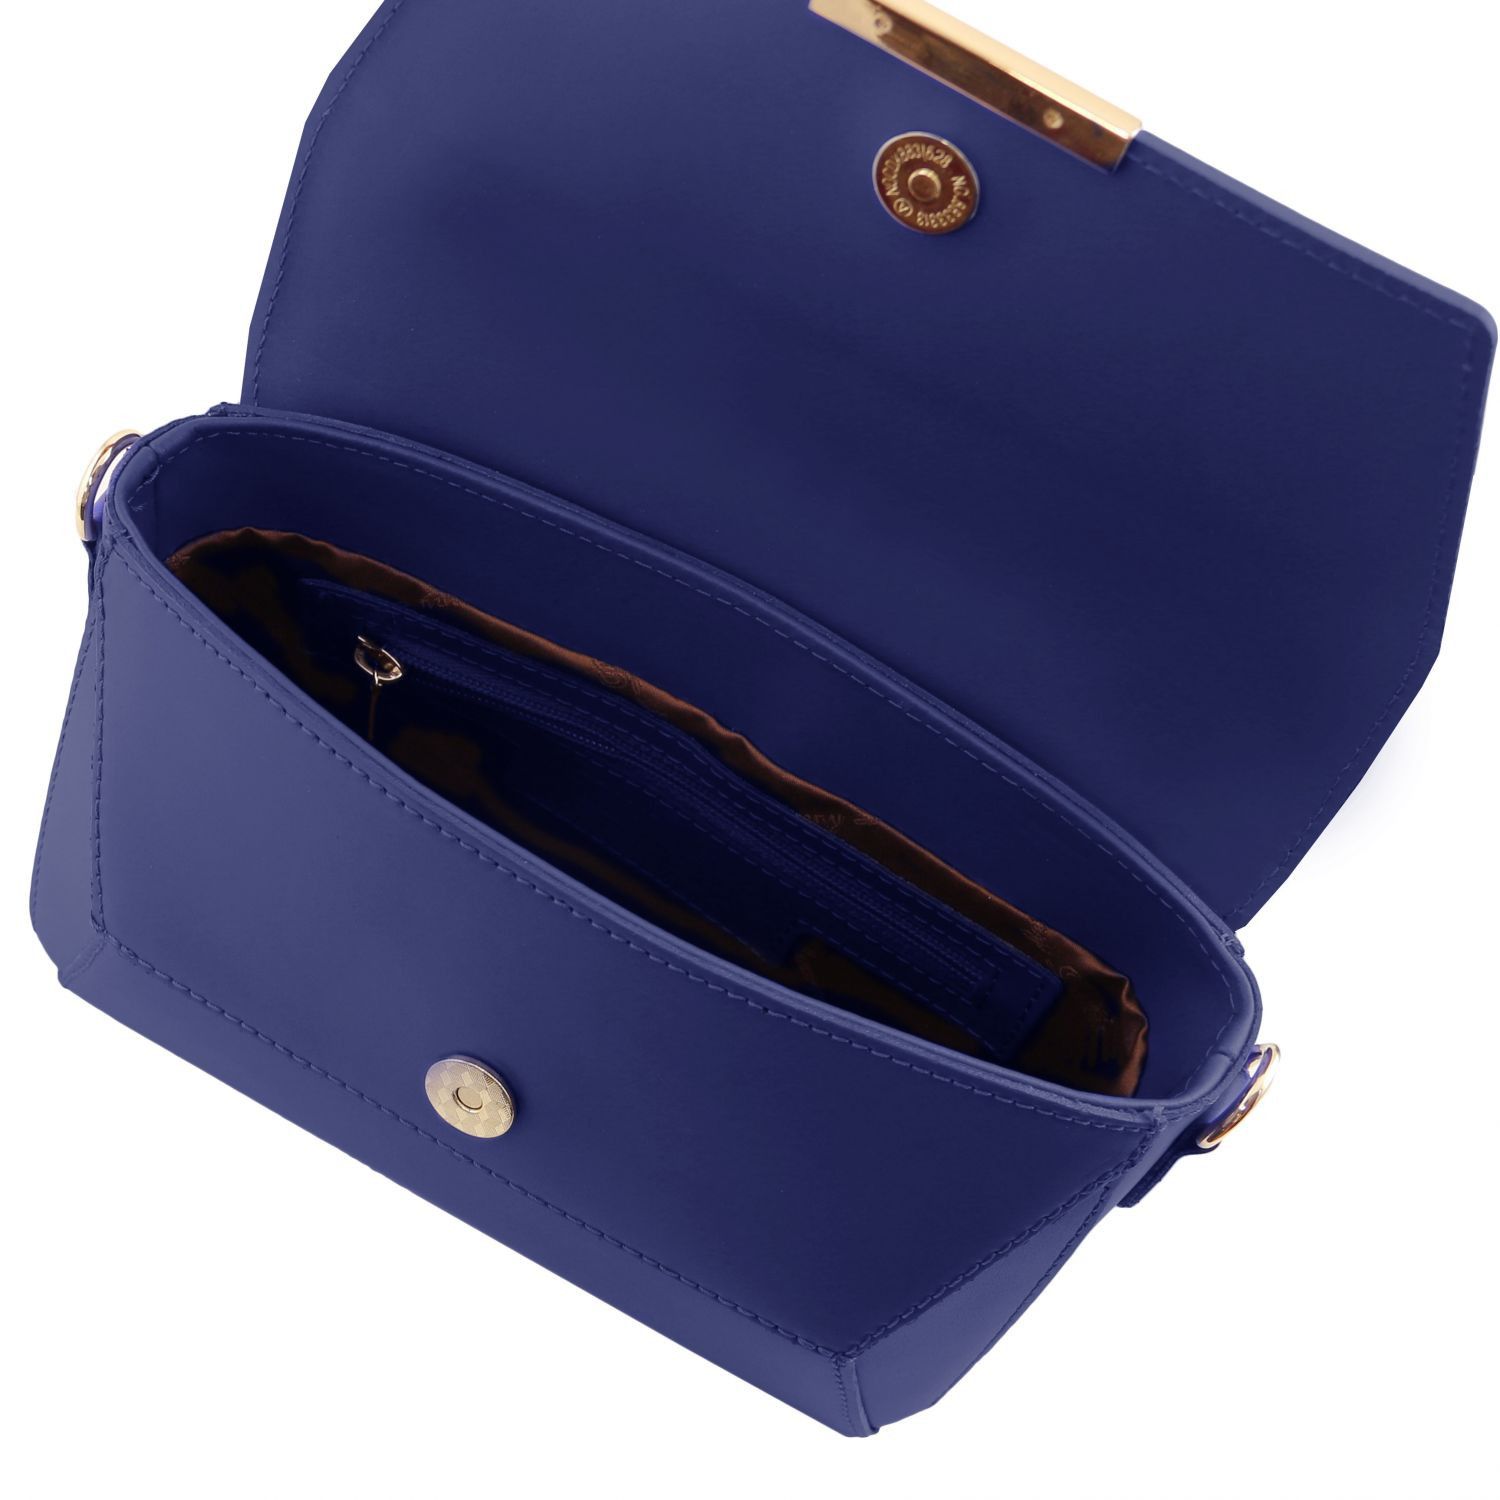 TL Bag Leather Clutch Handbag Dark Blue TL141584